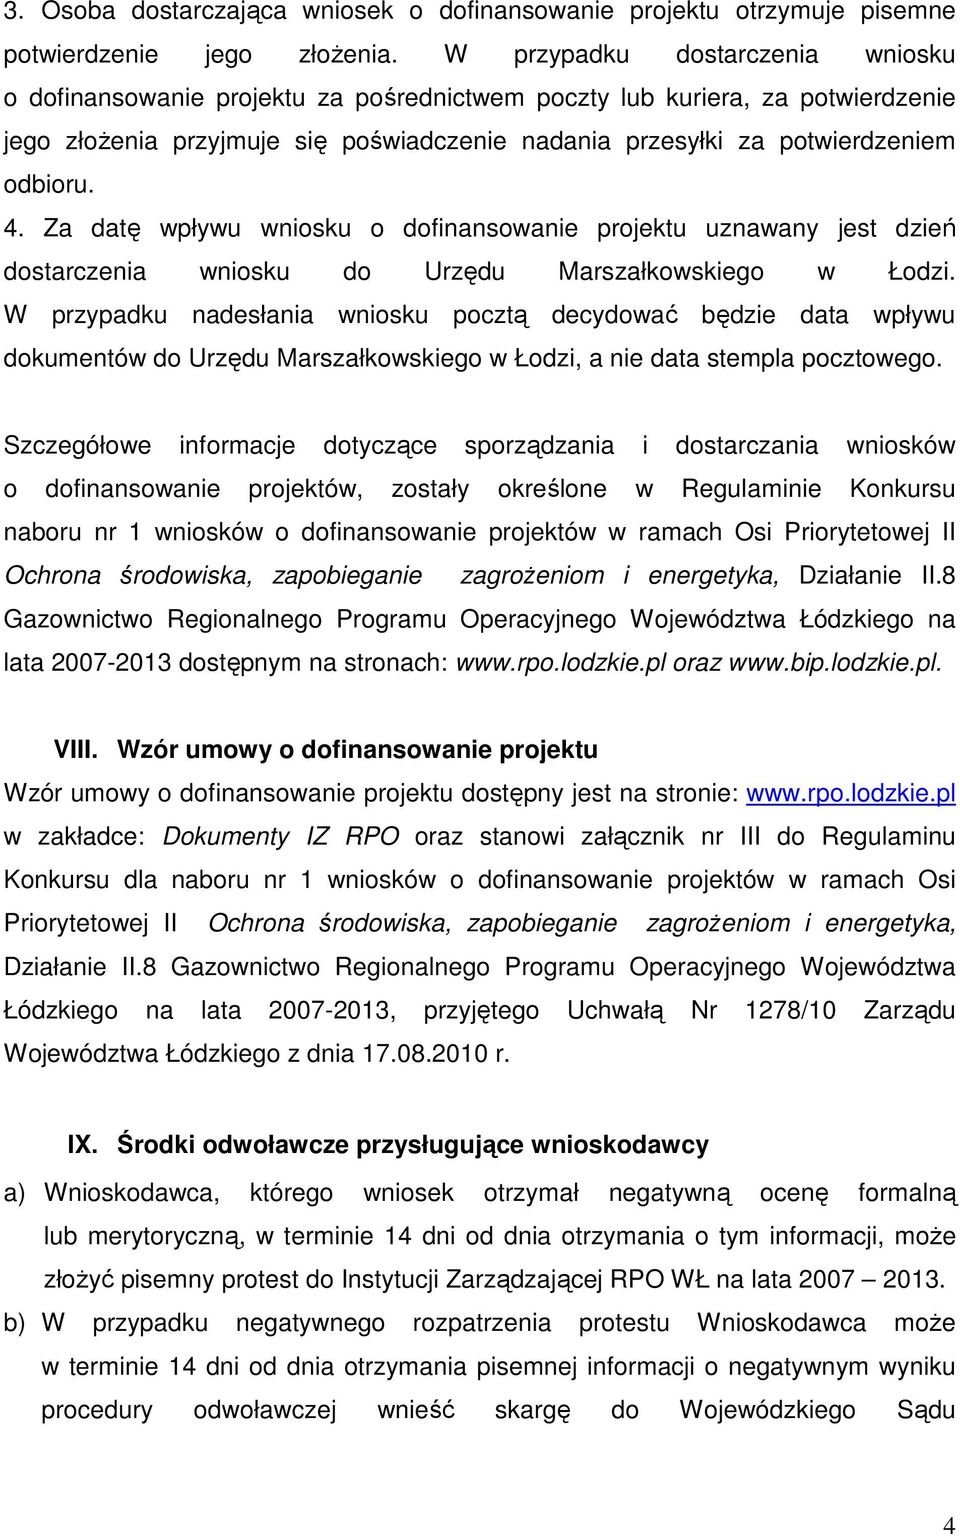 4. Za datę wpływu wniosku o dofinansowanie projektu uznawany jest dzień dostarczenia wniosku do Urzędu Marszałkowskiego w Łodzi.